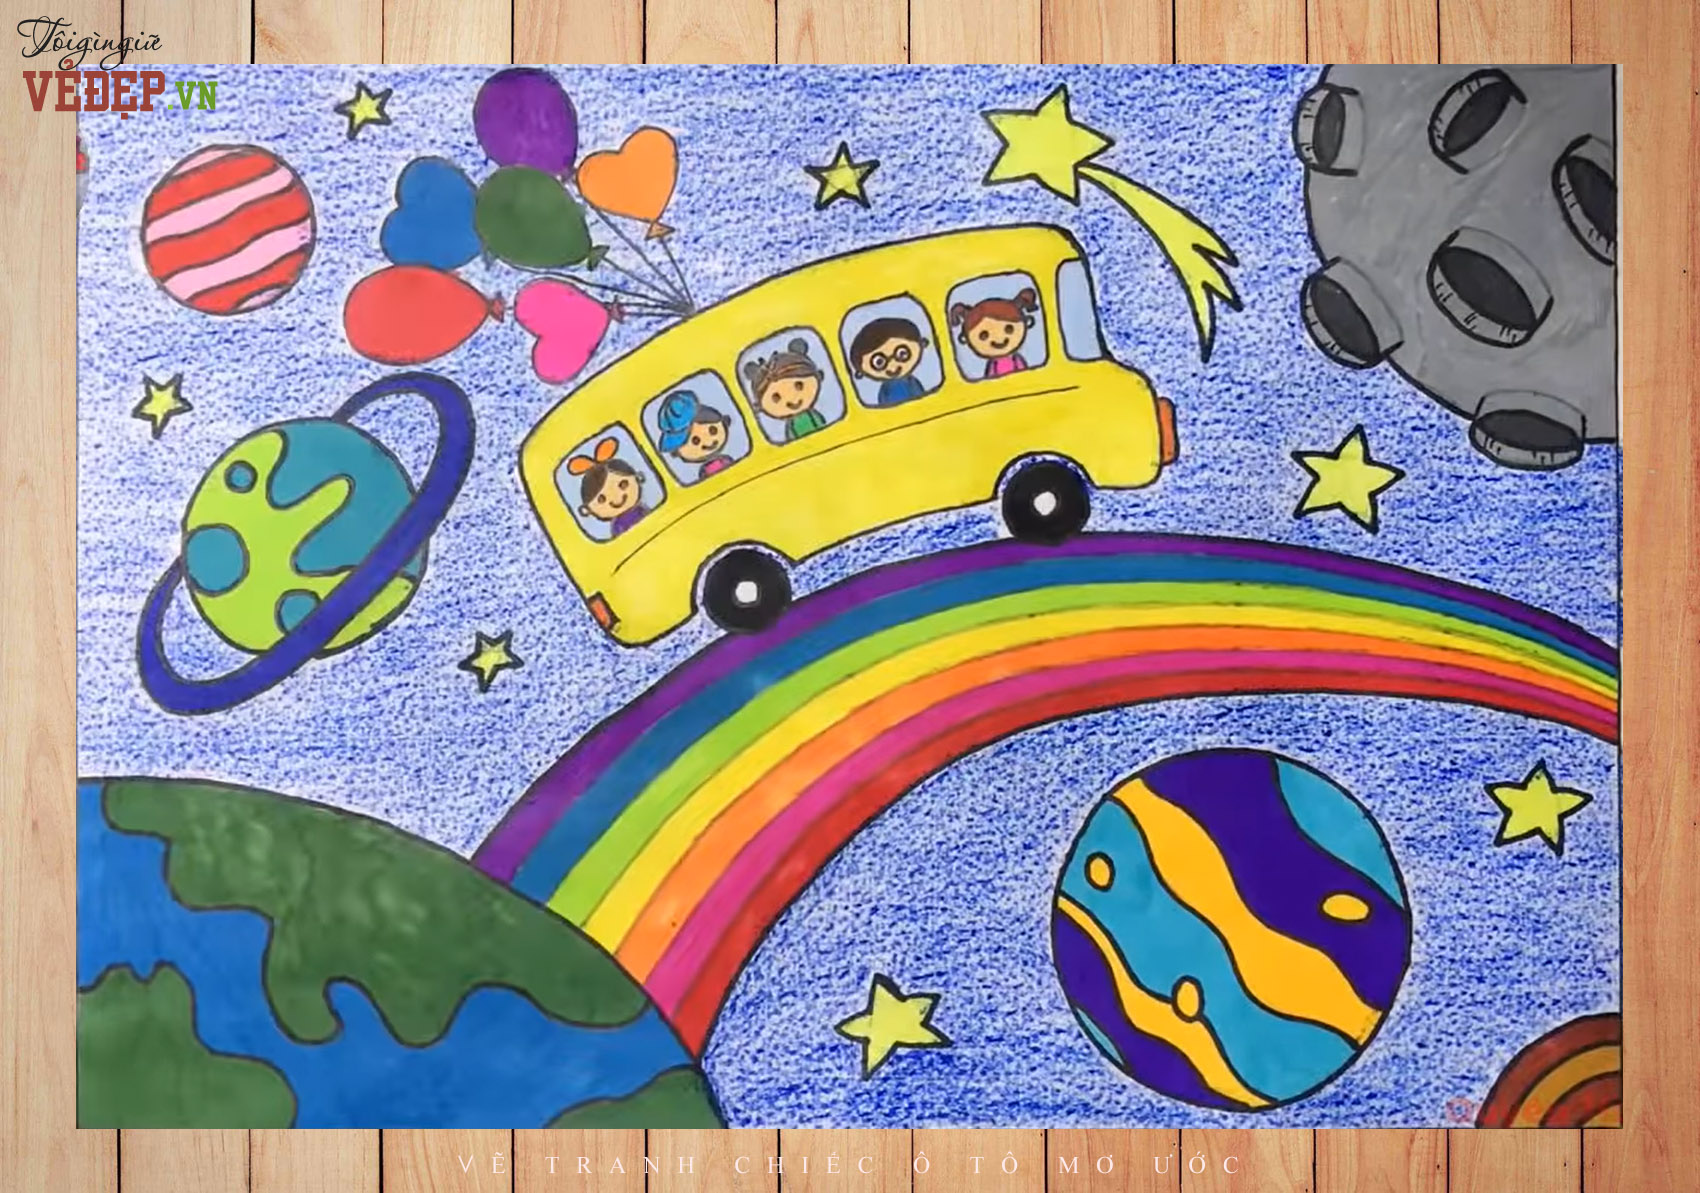 Hướng dẫn bé tập vẽ xe ô tô     Hướng dẫn bé tập vẽ xe ô tô       KidsUp  Ứng dụng giáo dục sớm